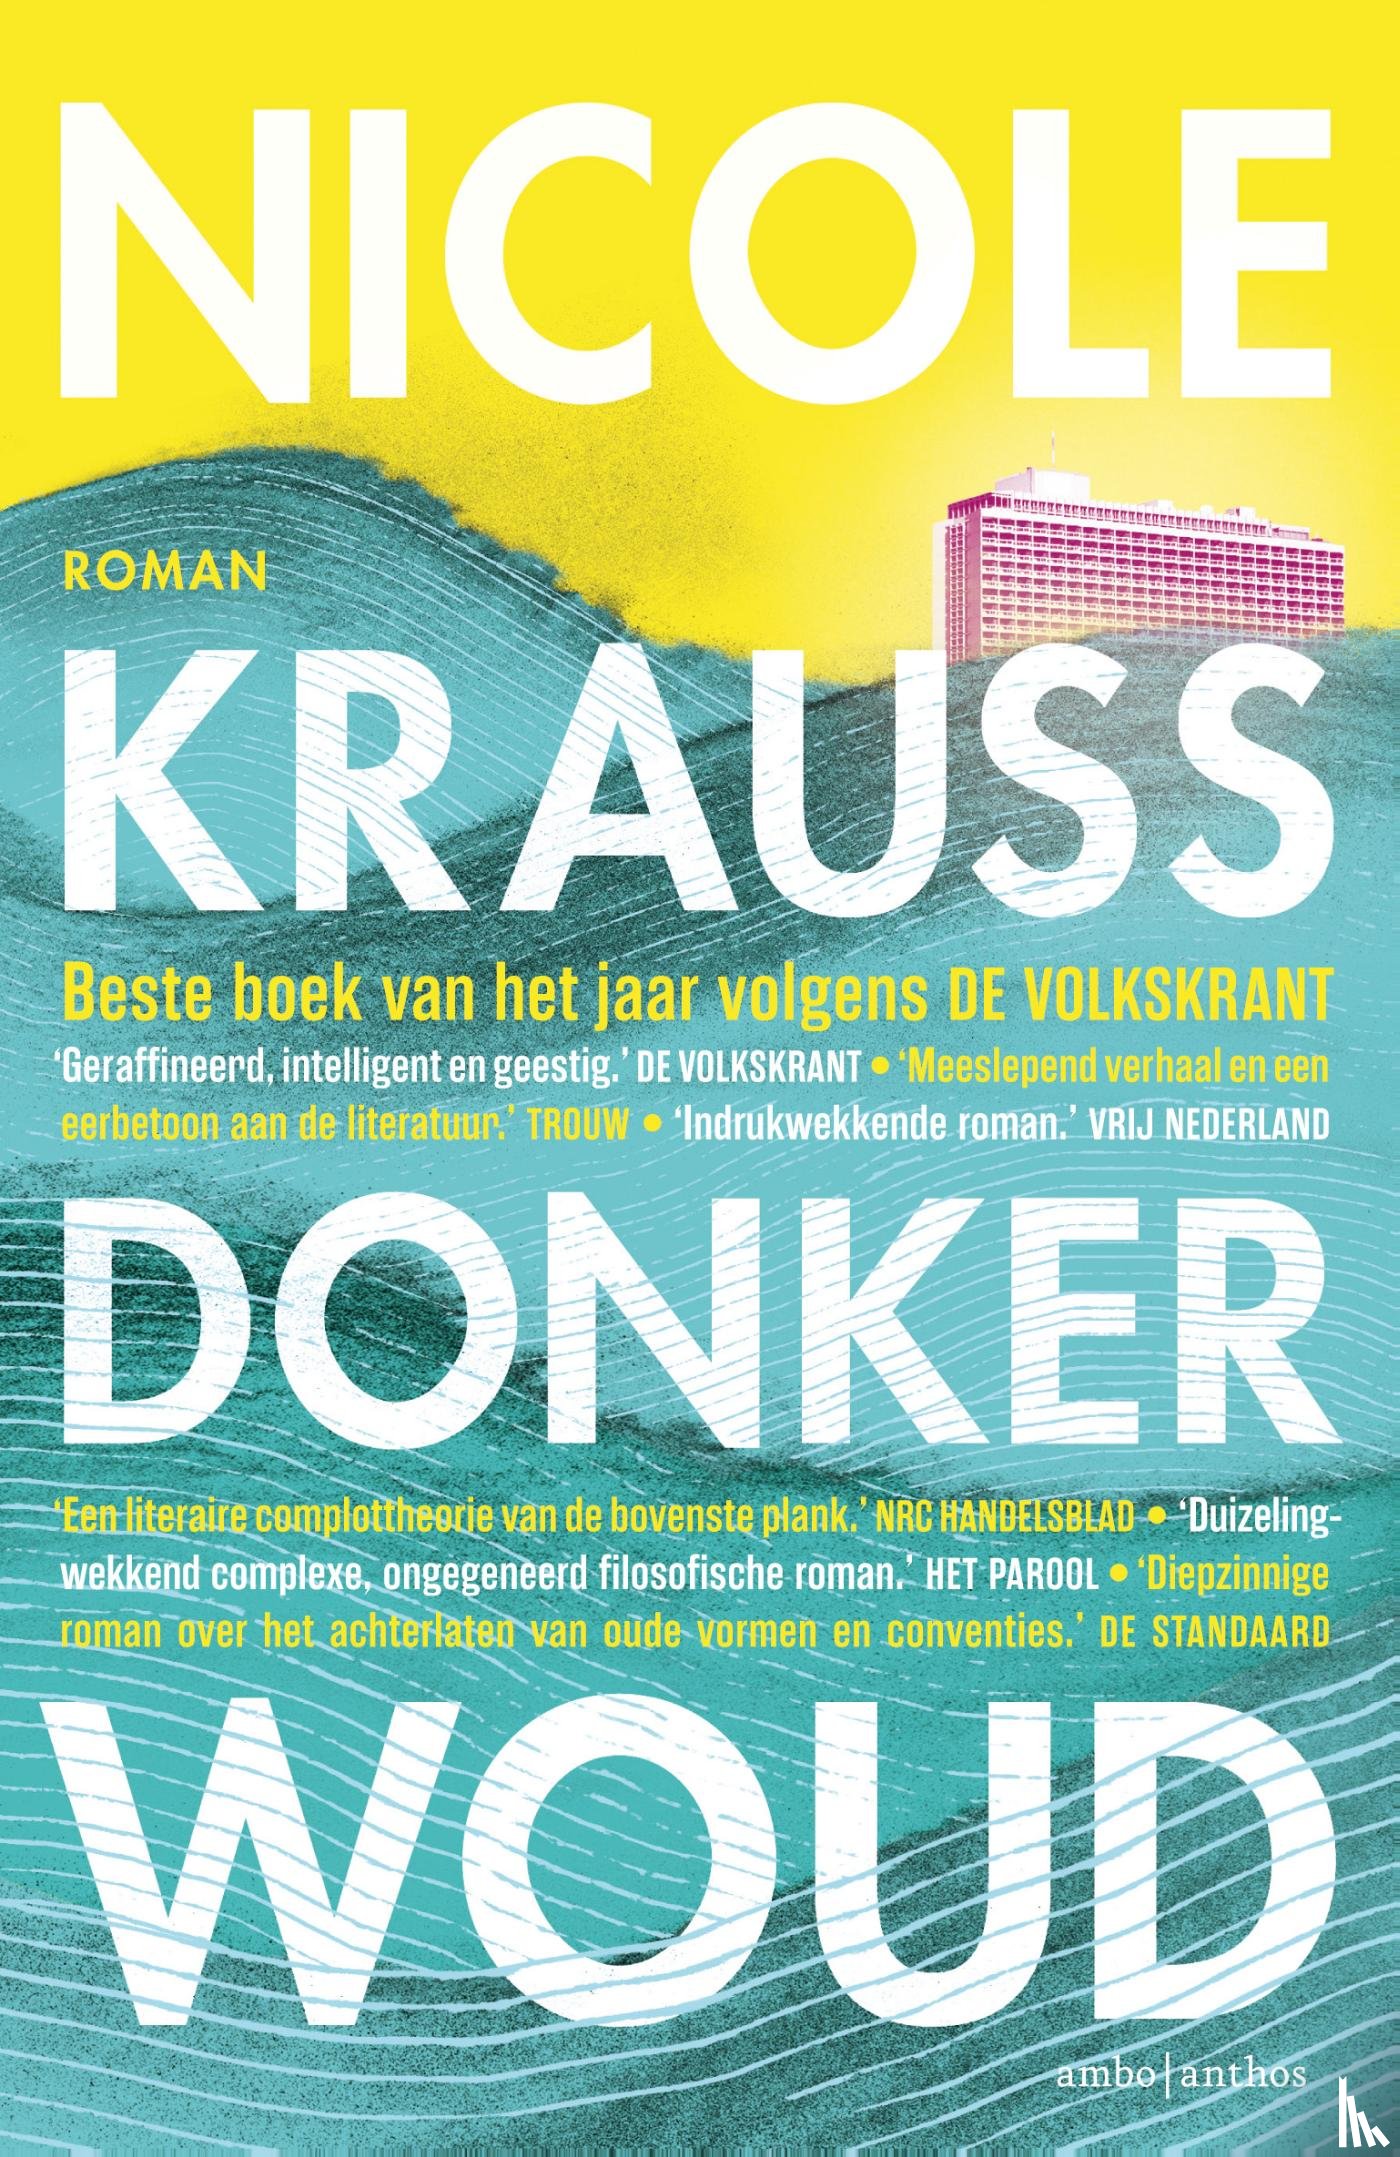 Krauss, Nicole - Donker woud